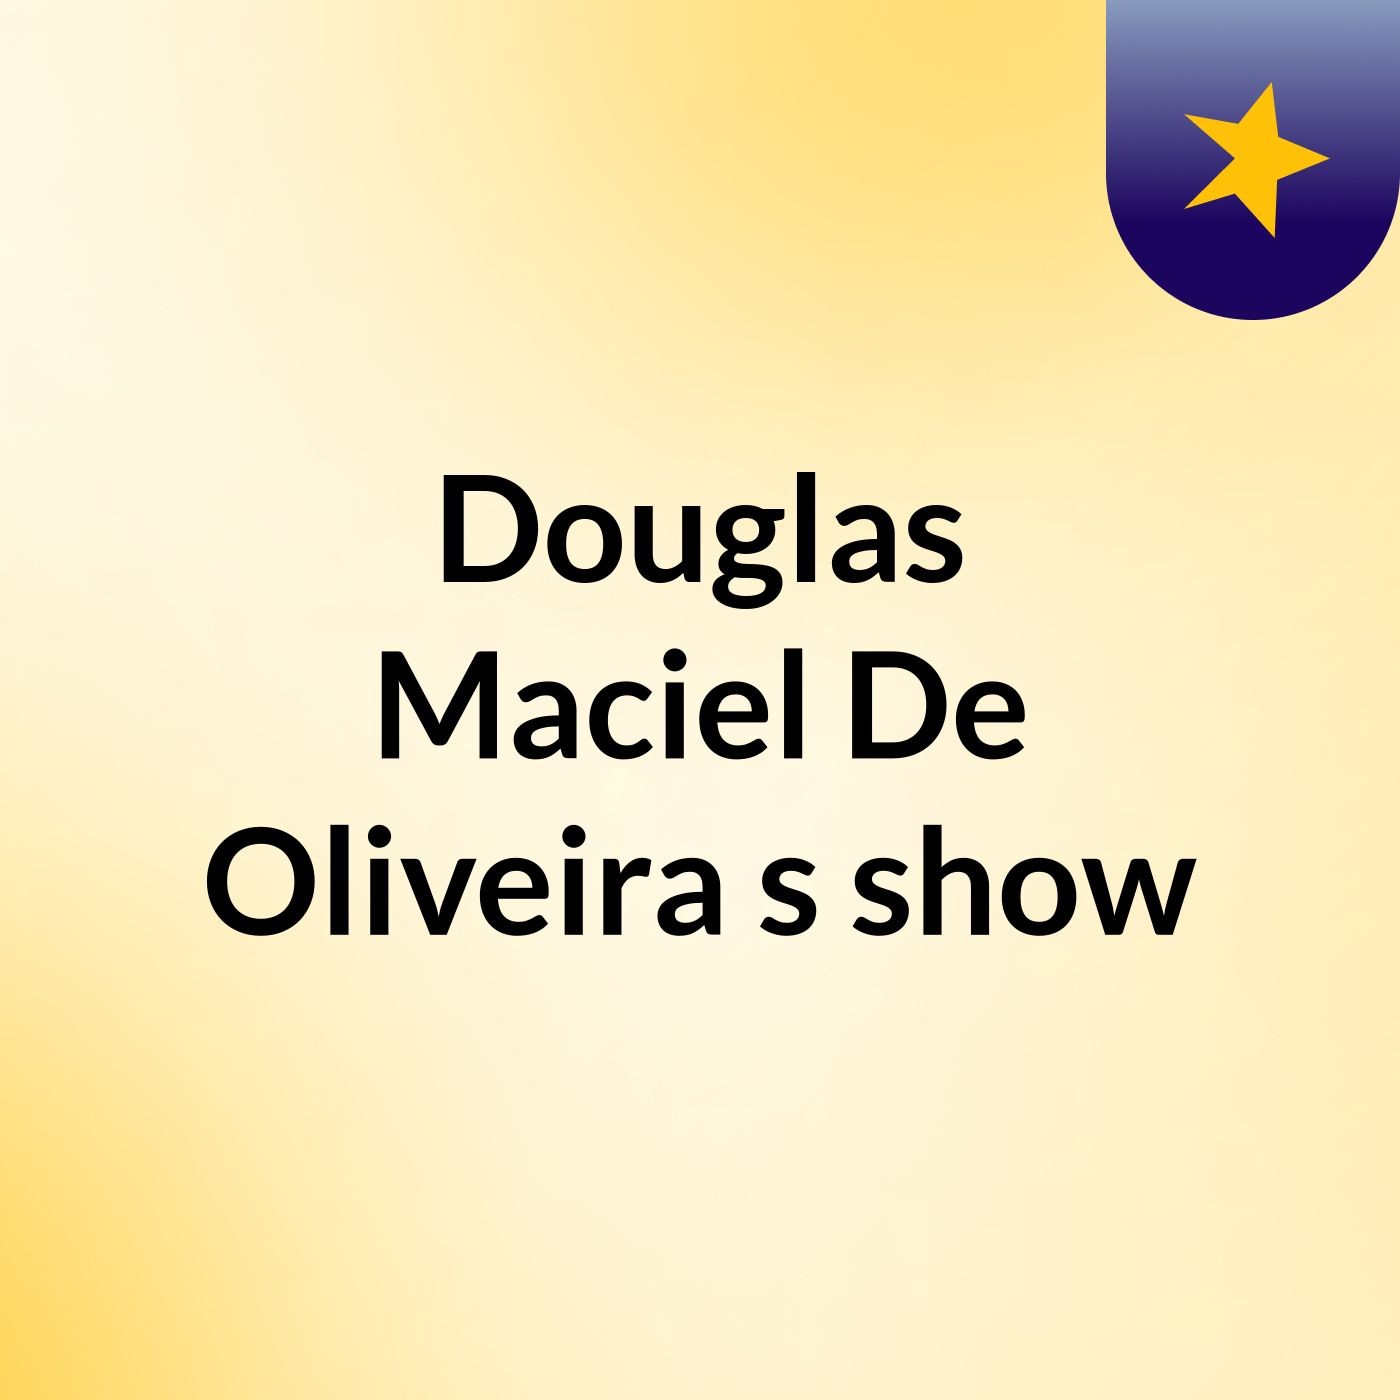 Douglas Maciel De Oliveira's show